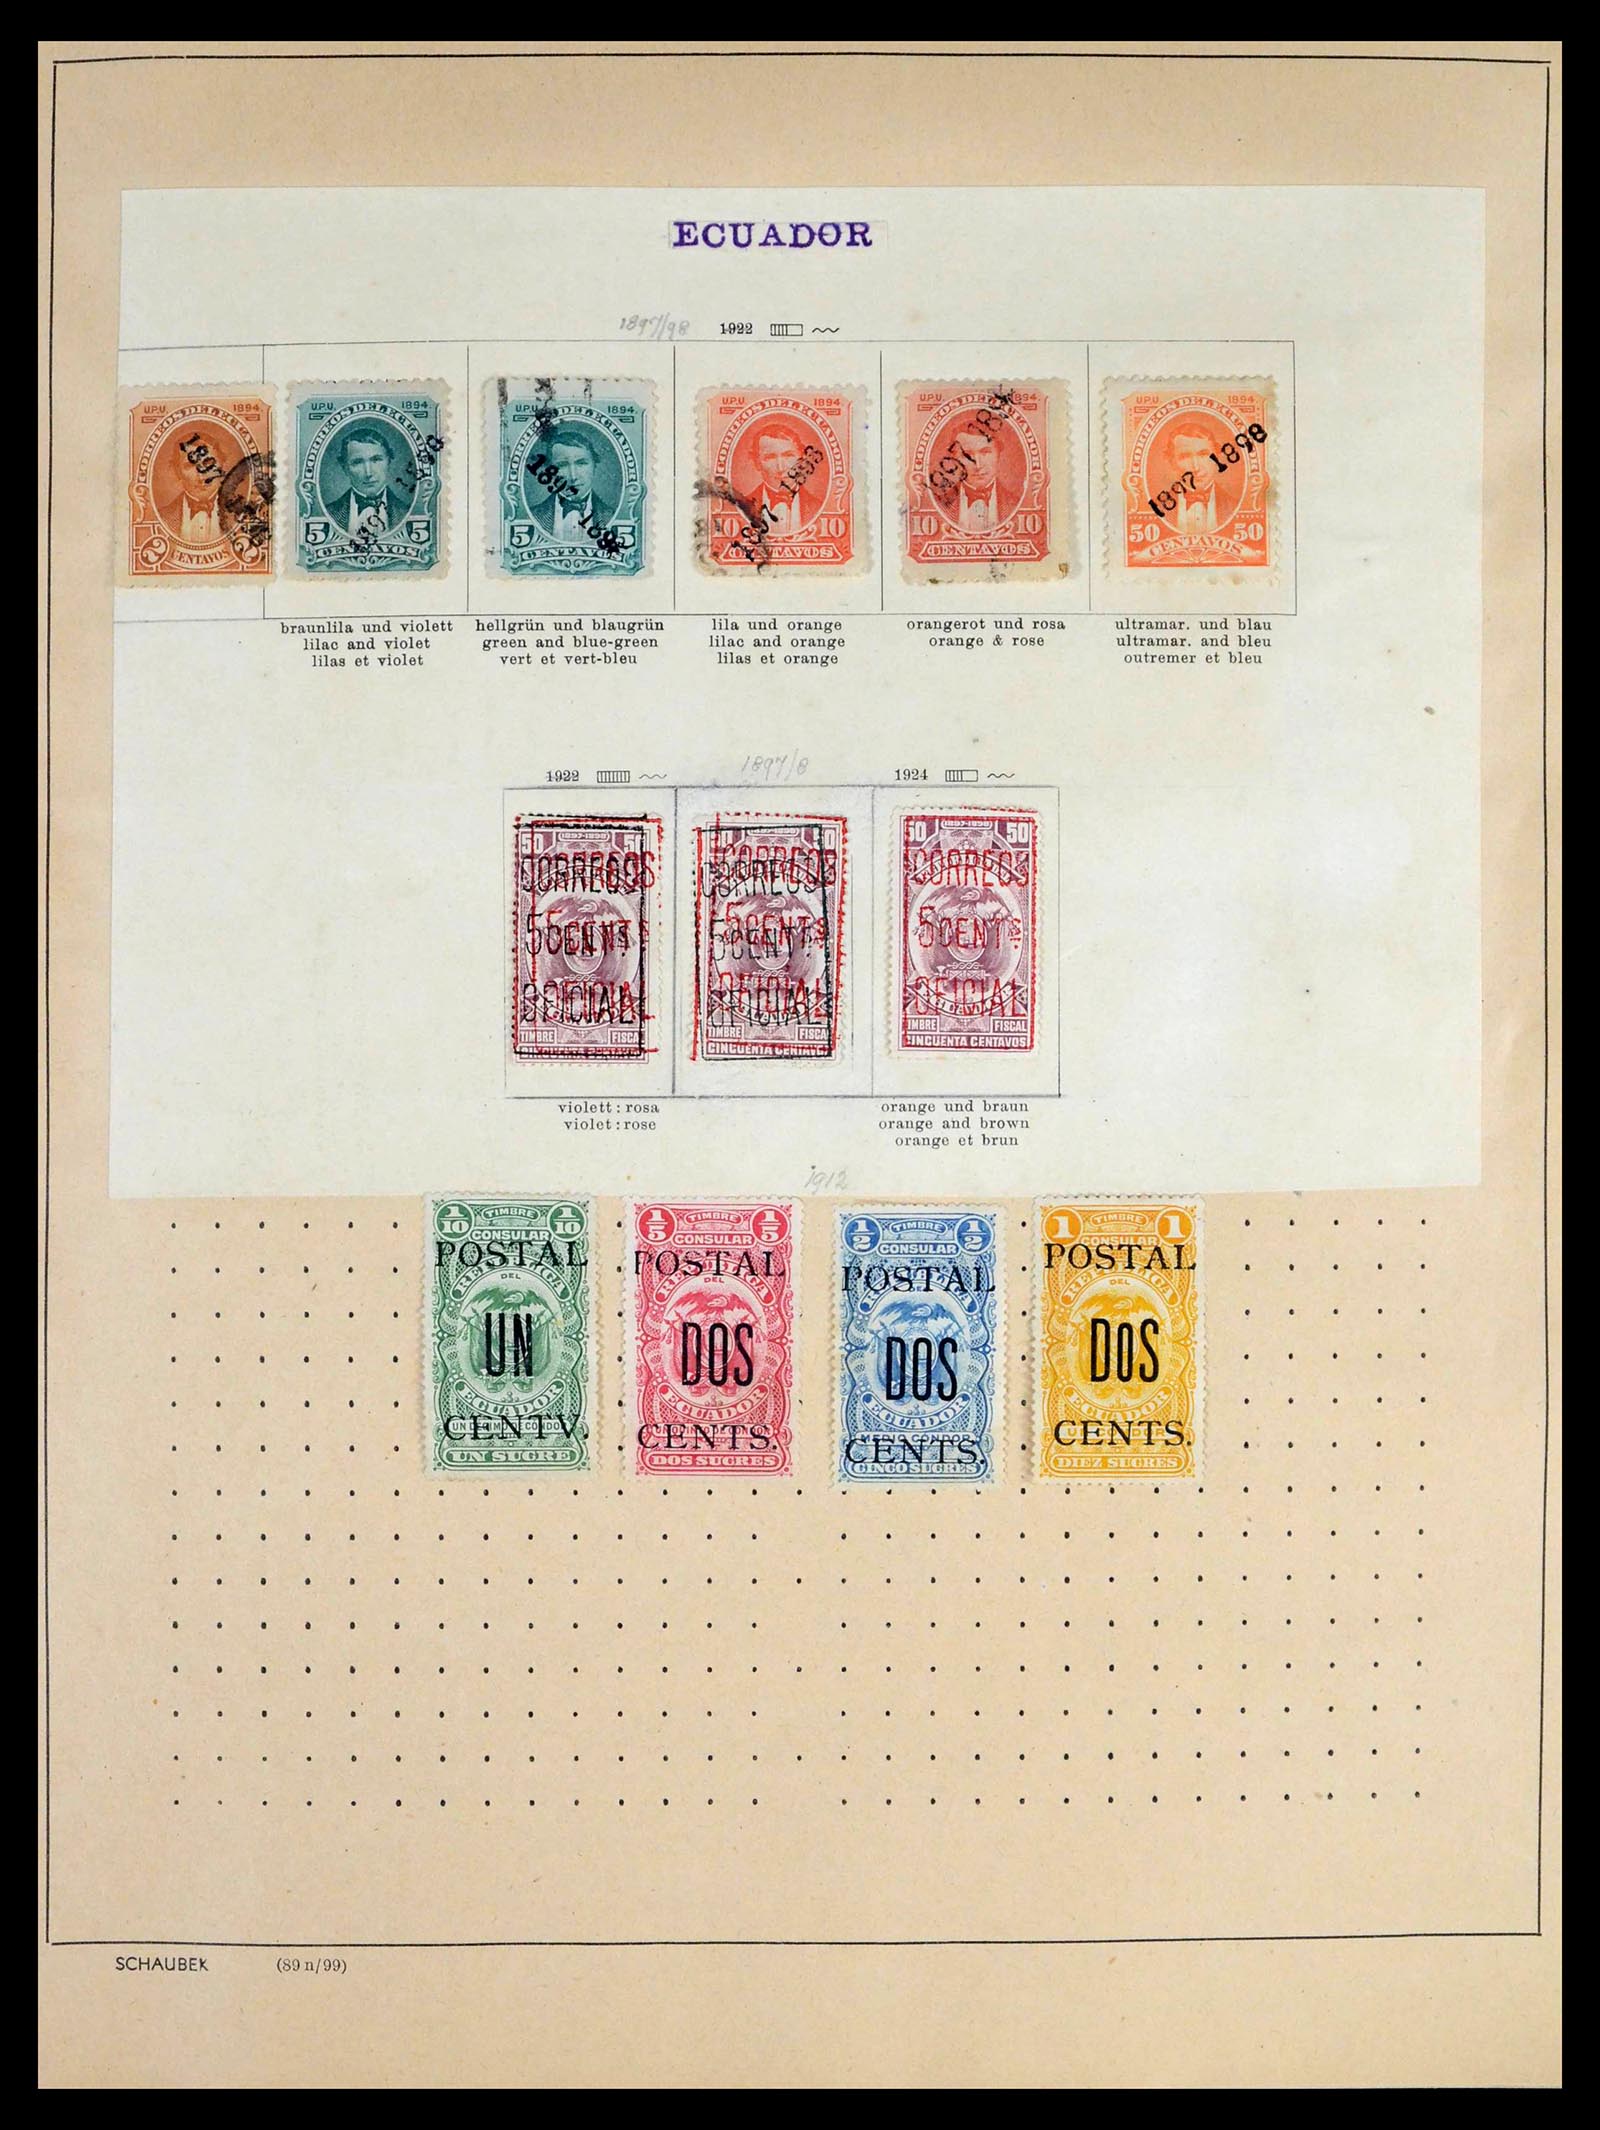 39456 0030 - Stamp collection 39456 Ecuador 1865-1960.